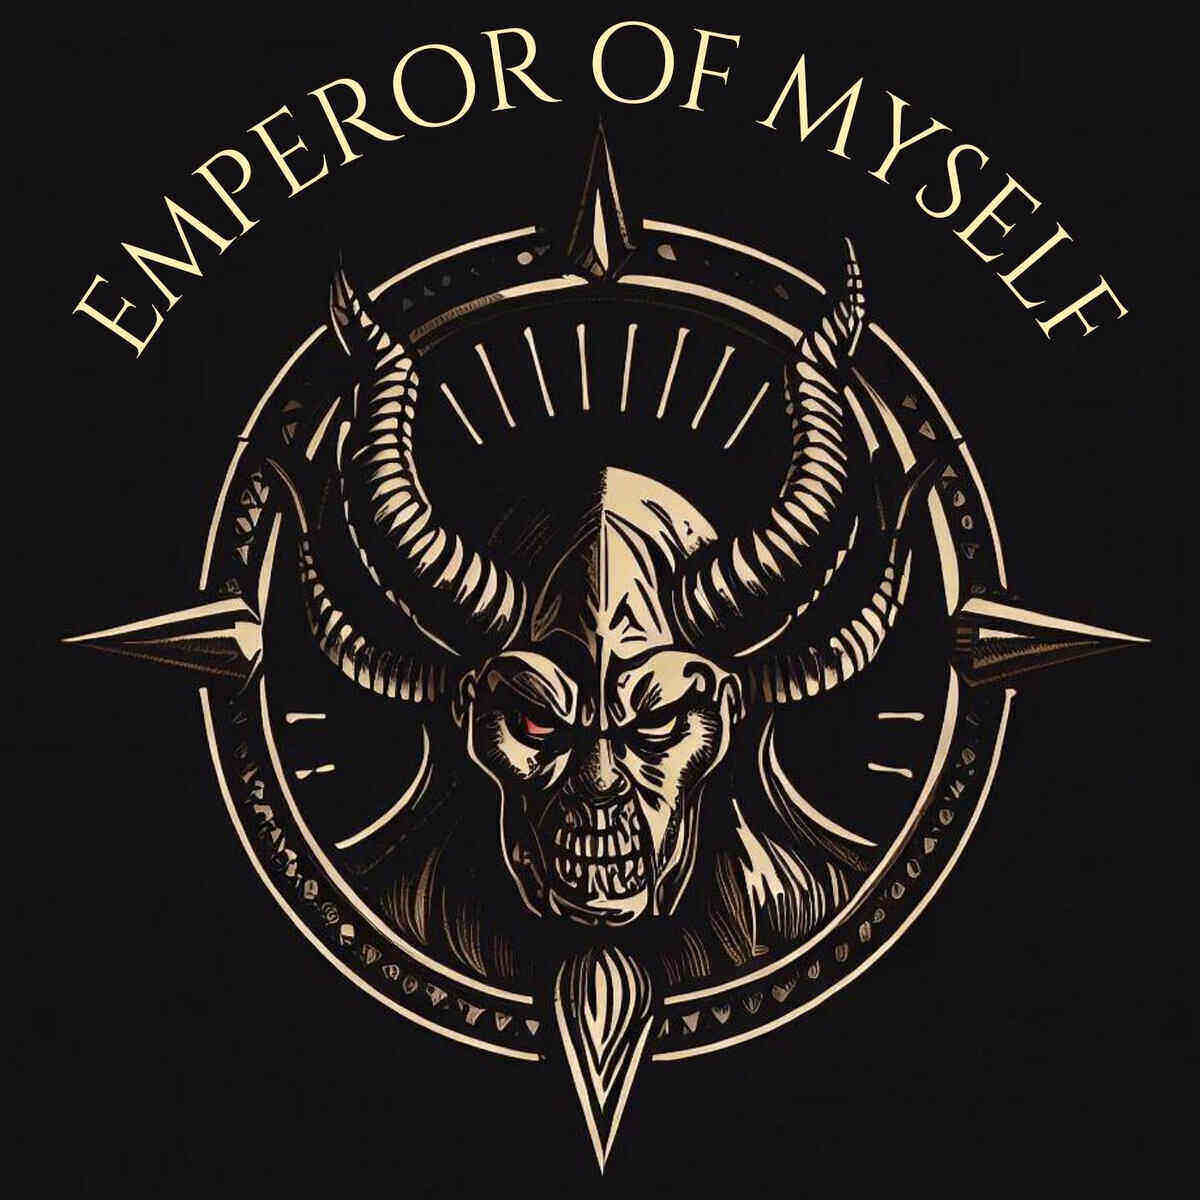 Emperor - Encyclopaedia Metallum: The Metal Archives